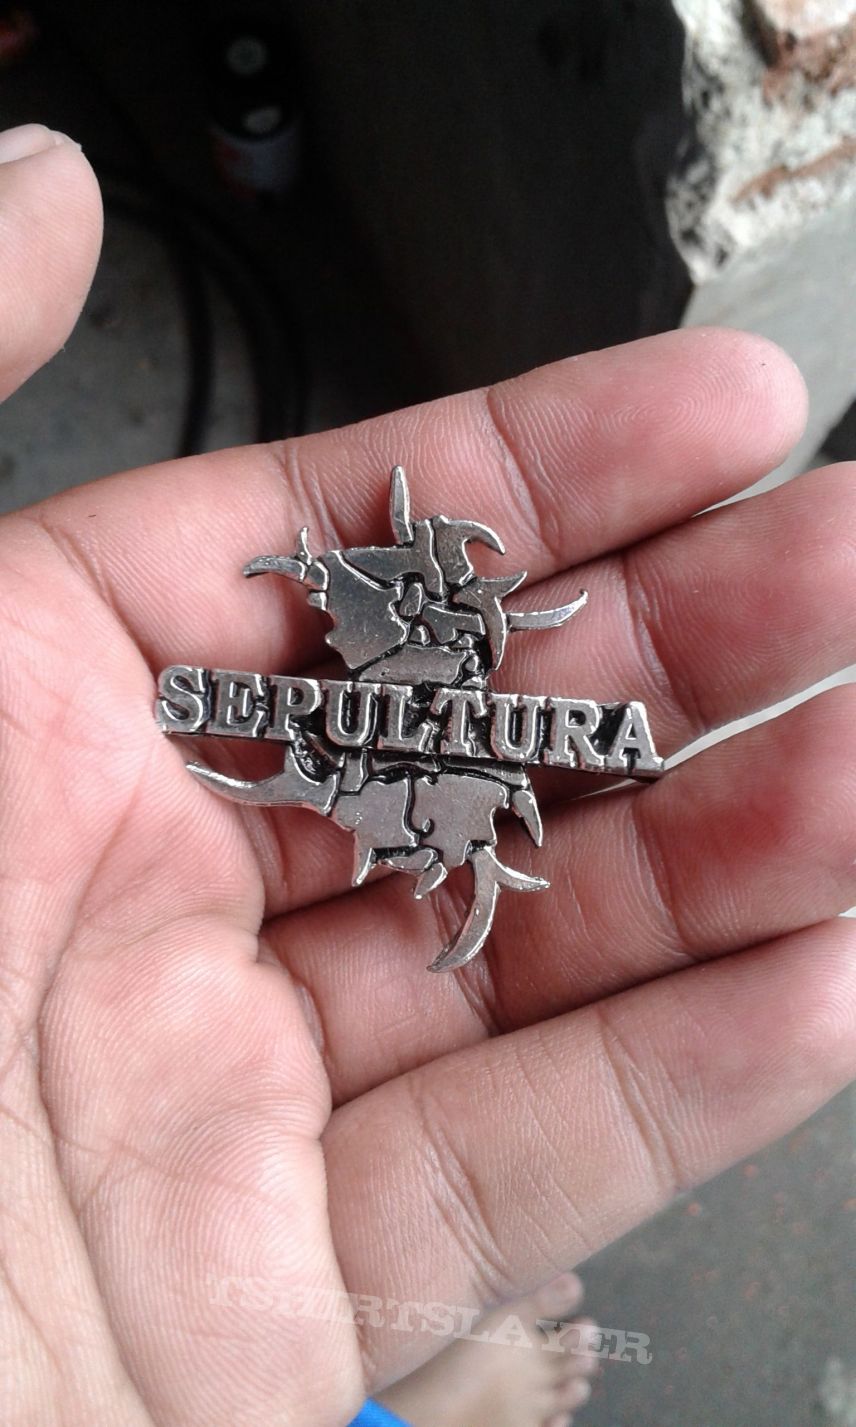 Sepultura metal pin